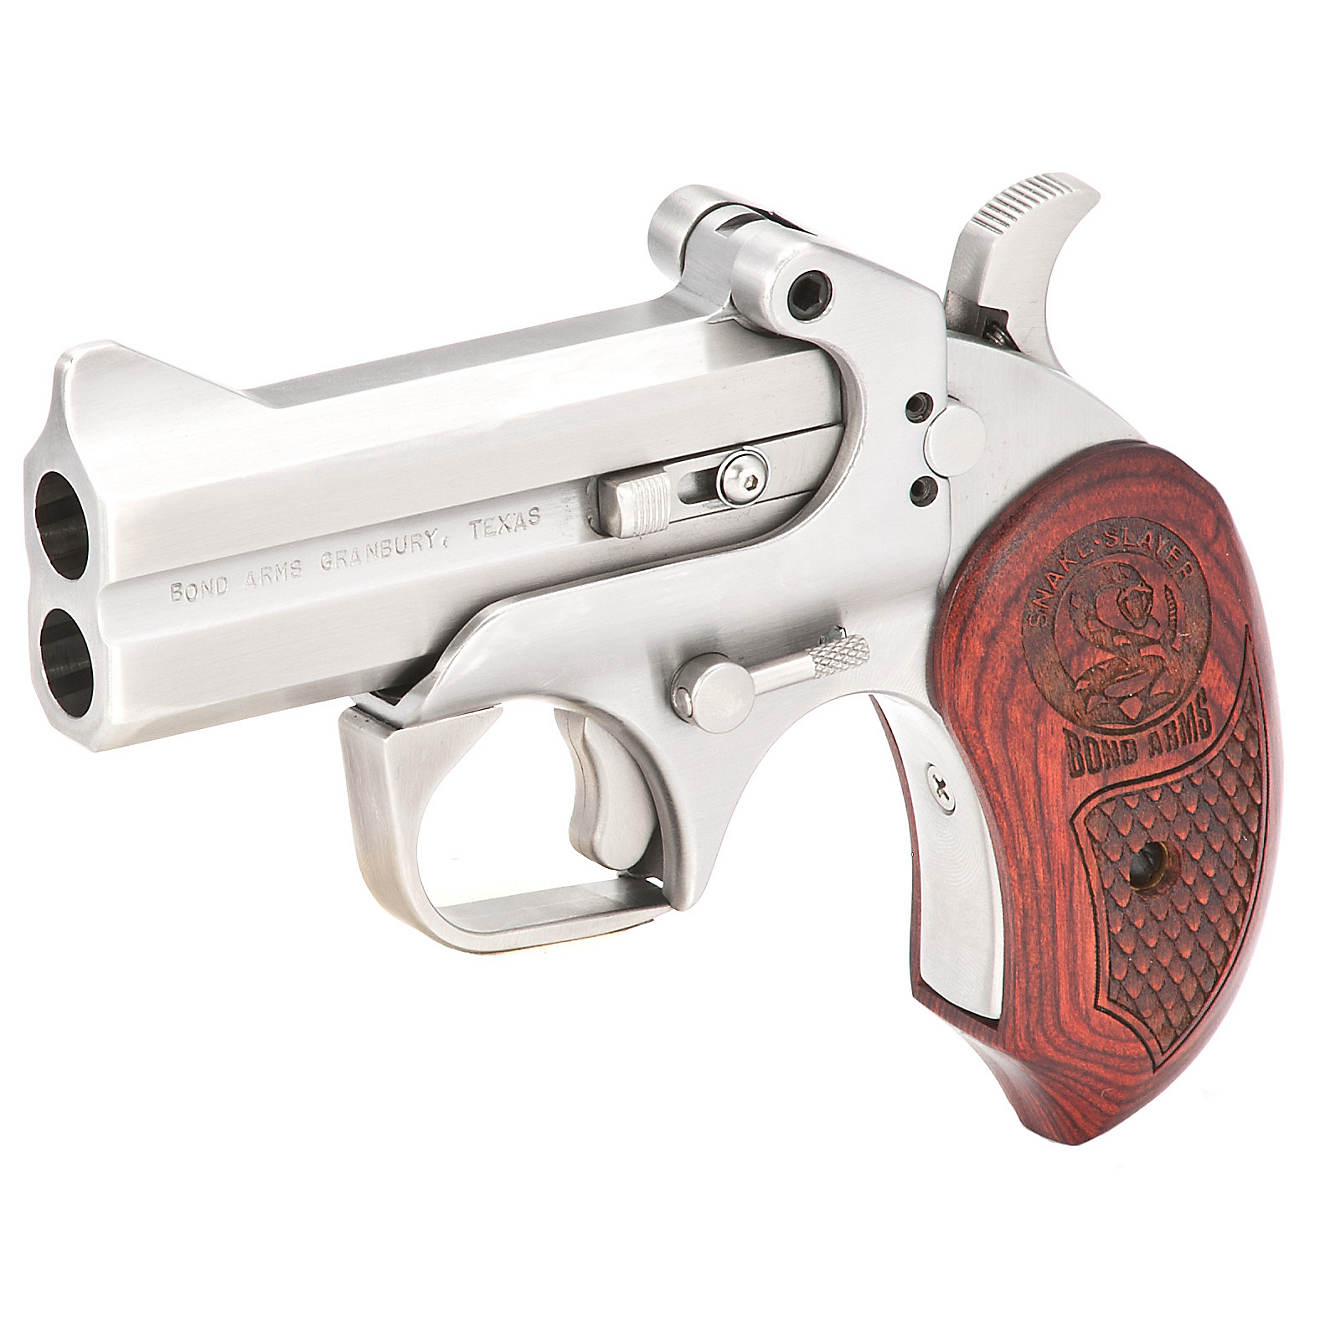 Bond Arms Snake Slayer .45/.410 Derringer Pistol | Academy